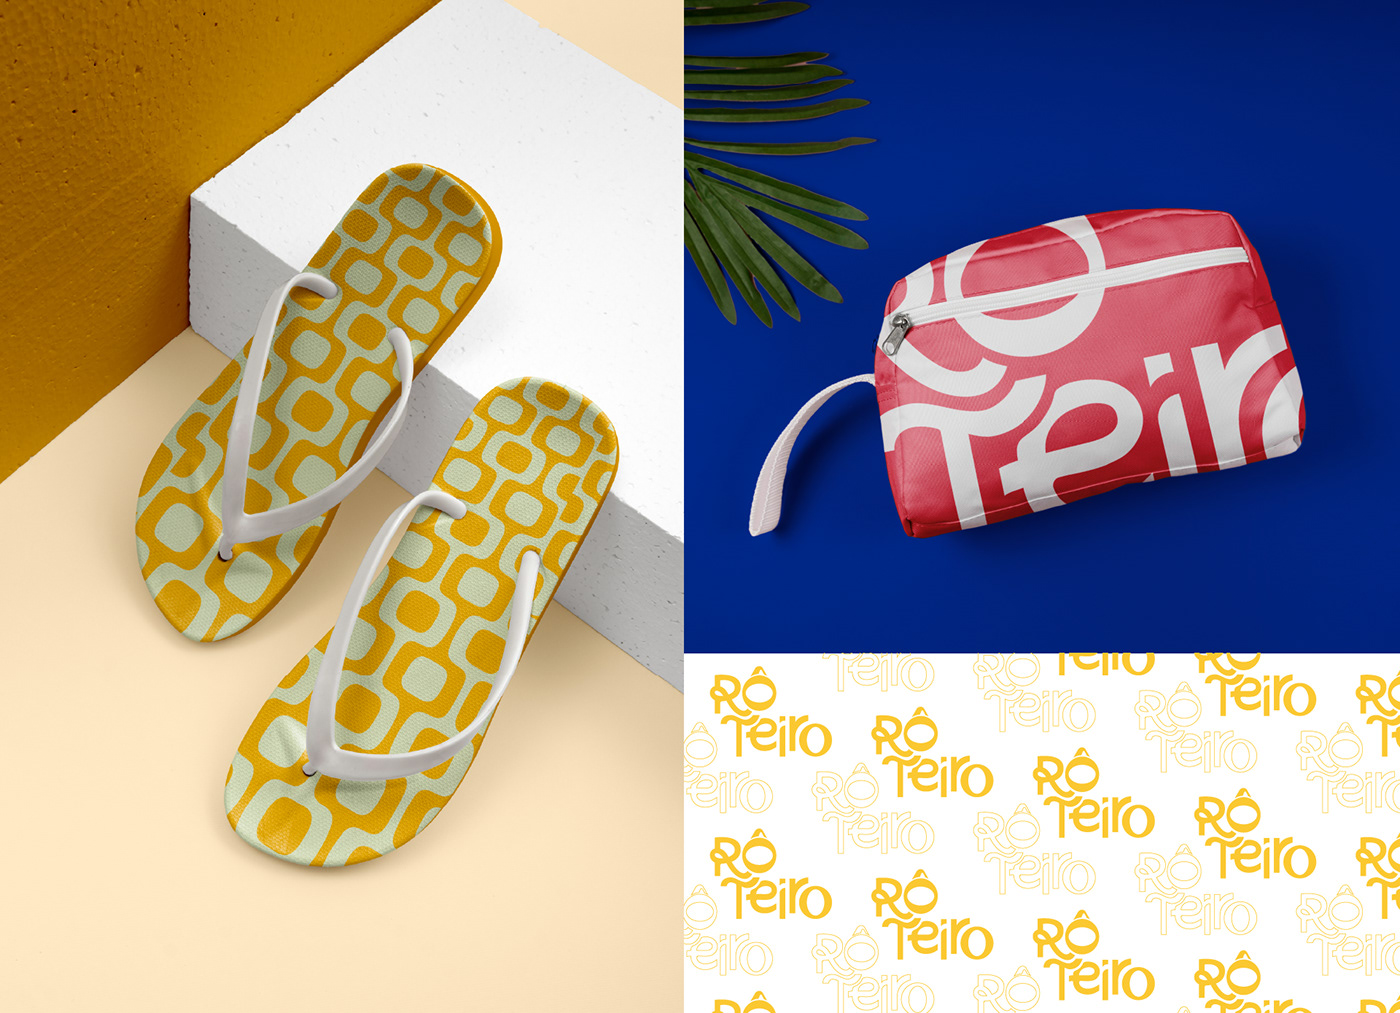 agencia de viagem Turismo Travel identidade visual brand identity design gráfico marketing   Logo Design designer Brand Design